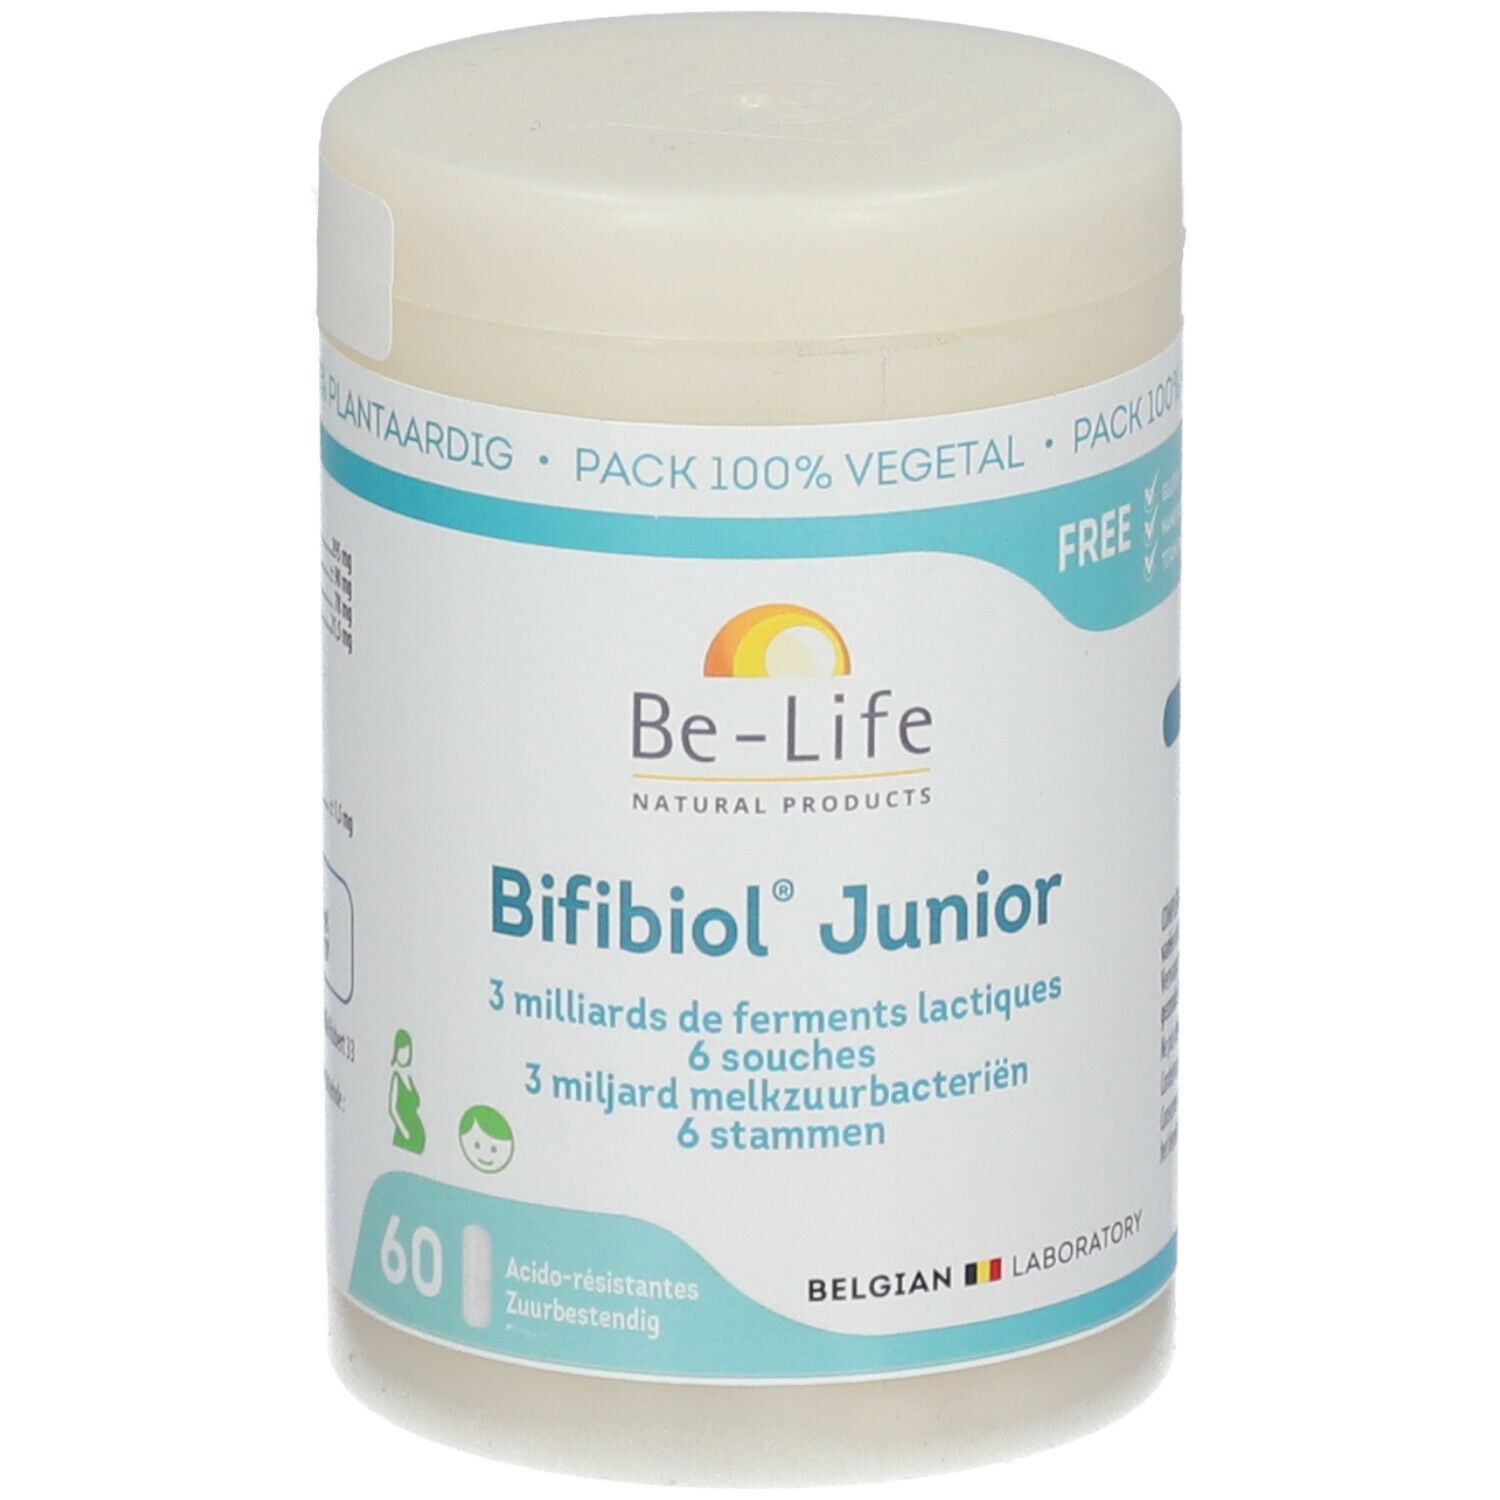 Be-Life Bifibiol Junior